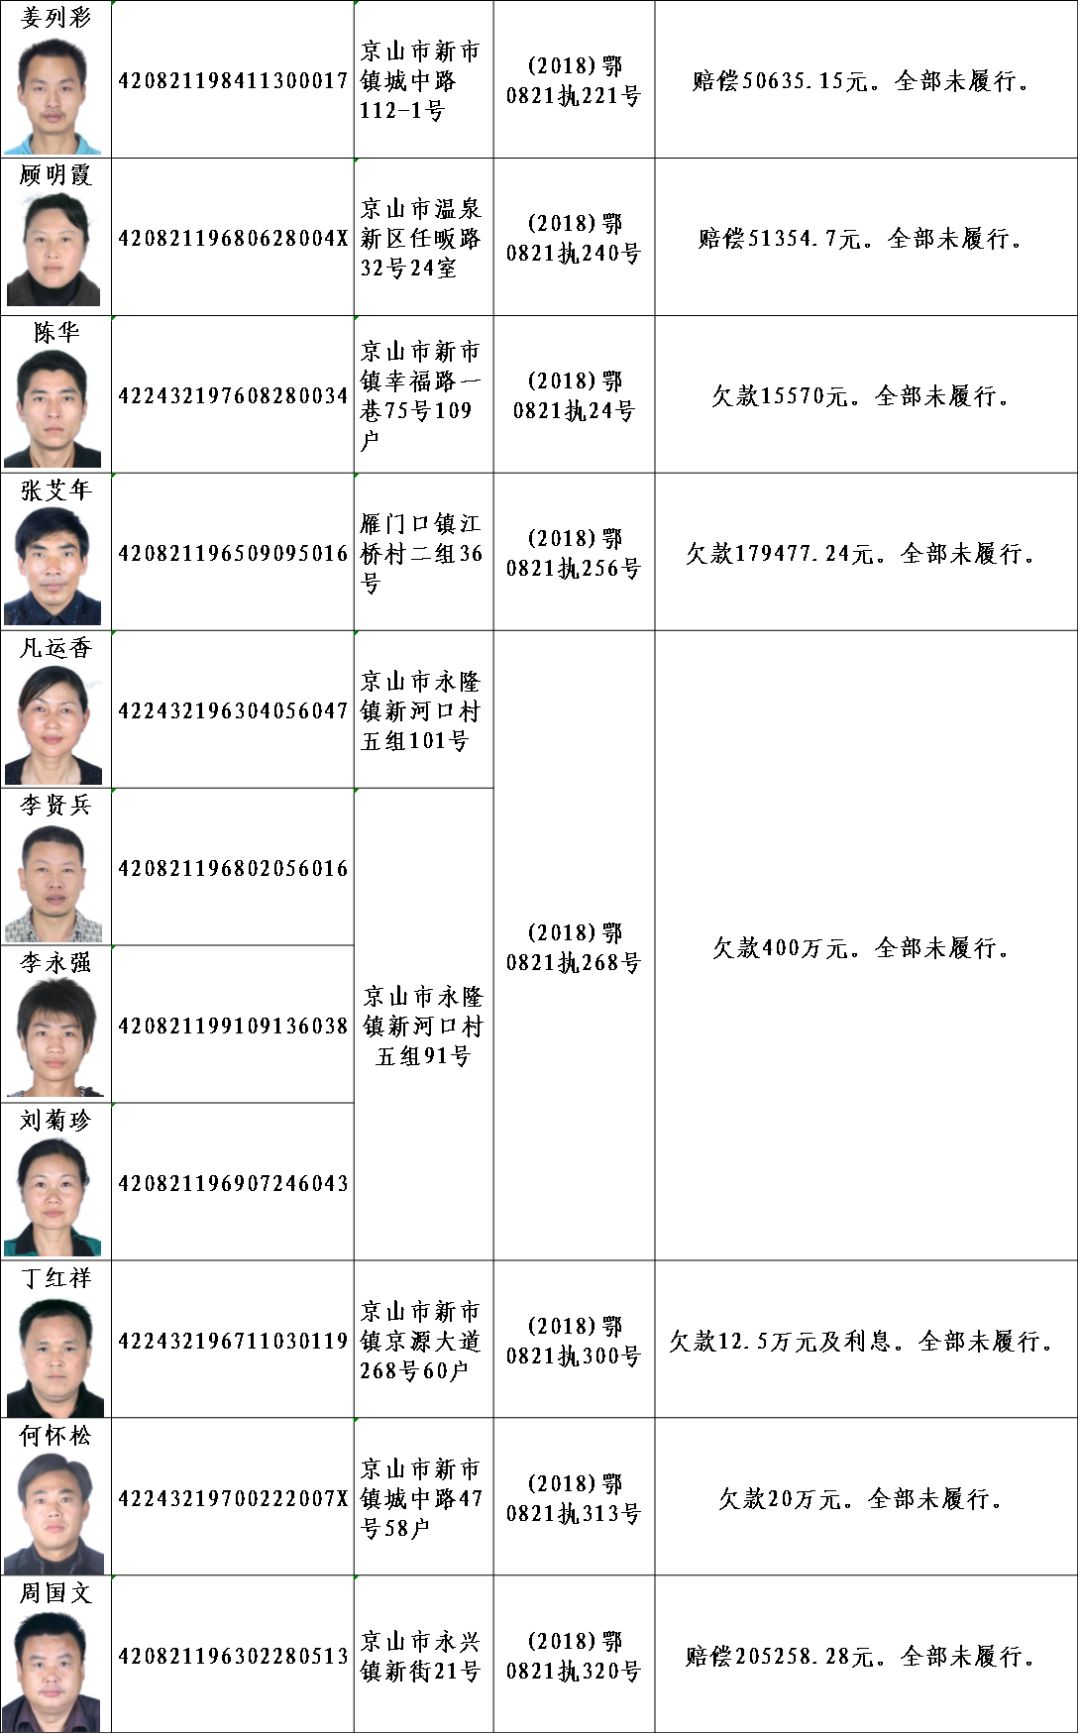 荆门公布最新失信人员名单!高清照片,身份证号全部被曝光!